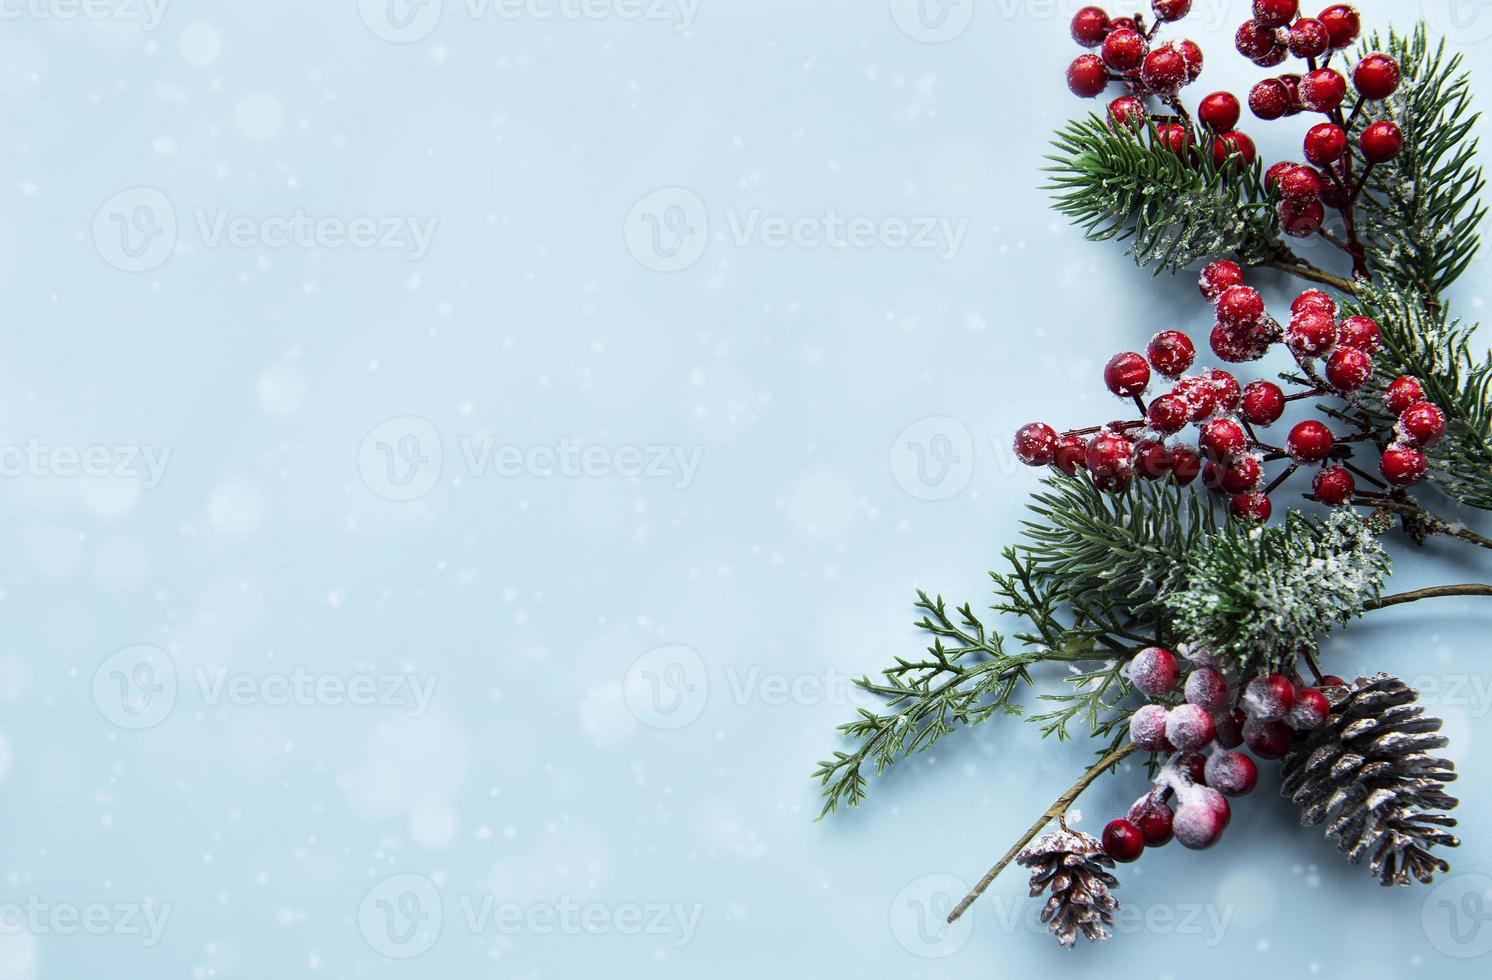 composição de natal com ramos de pinheiro nevado foto